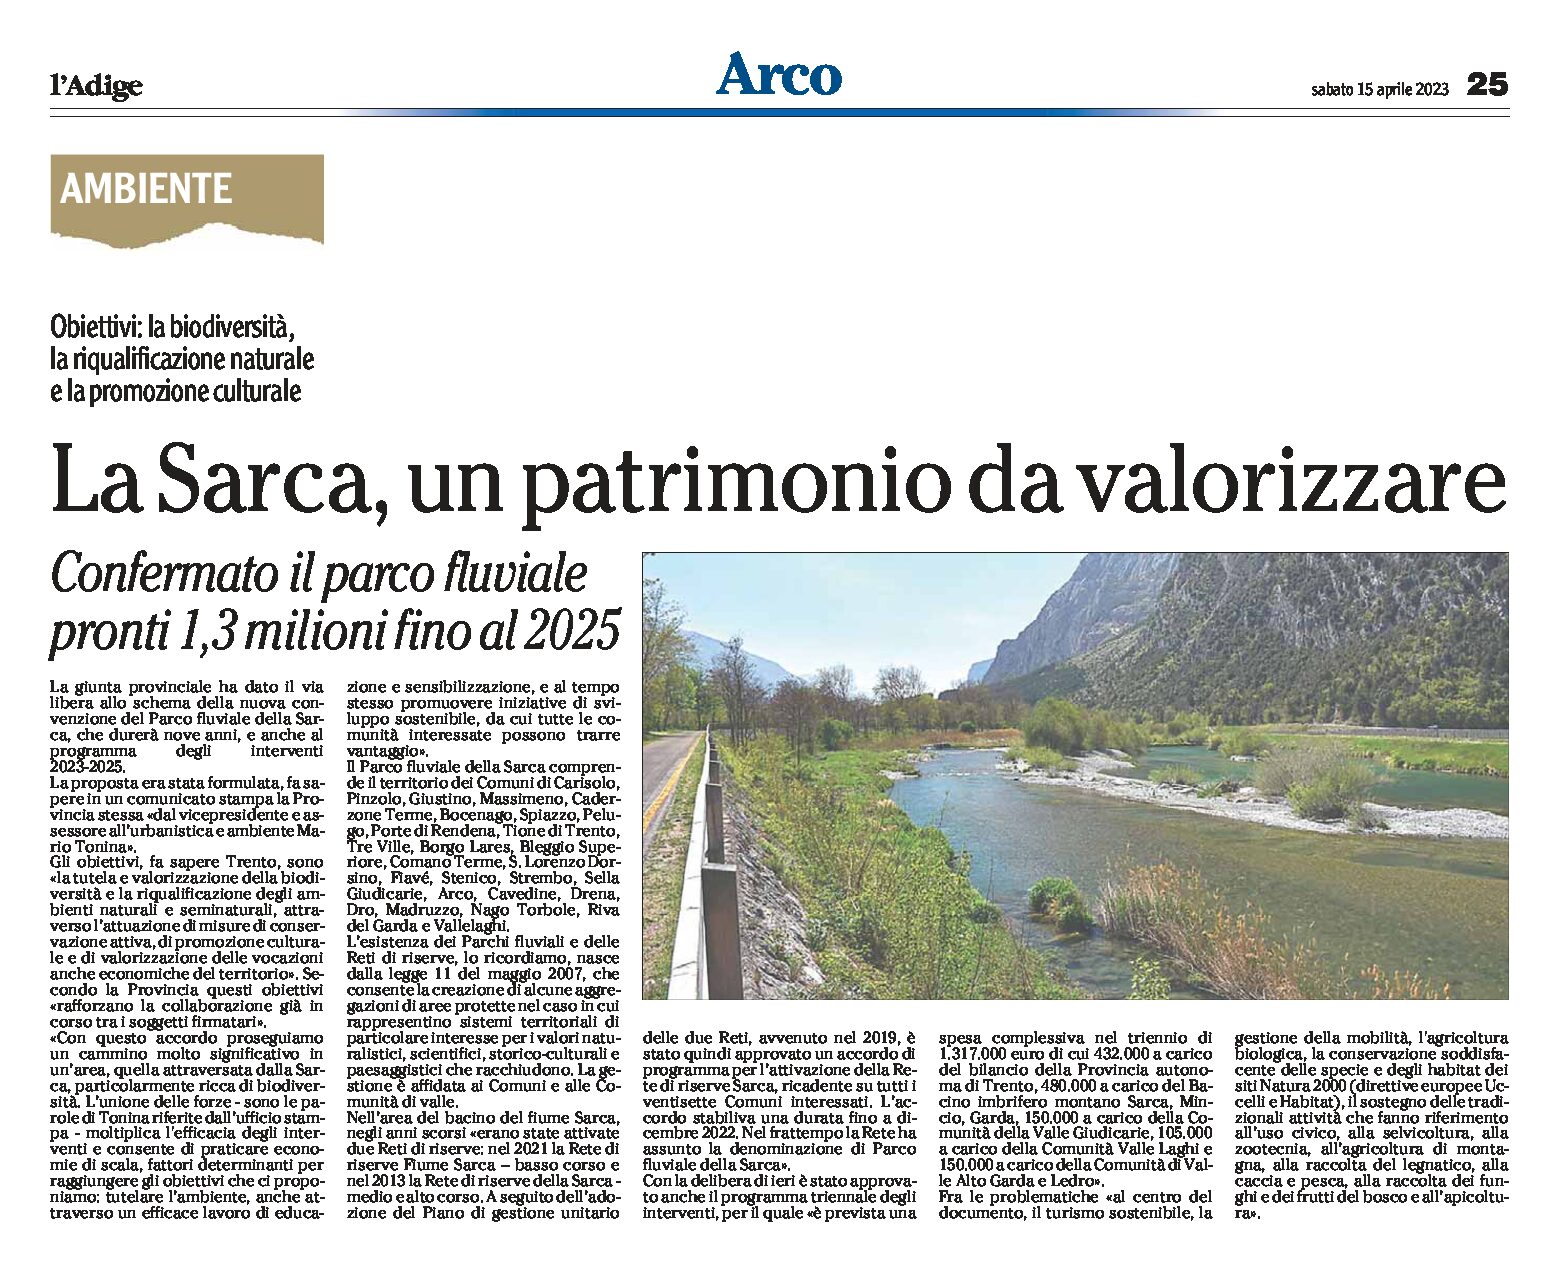 La Sarca: un patrimonio da valorizzare. Confermato il parco fluviale